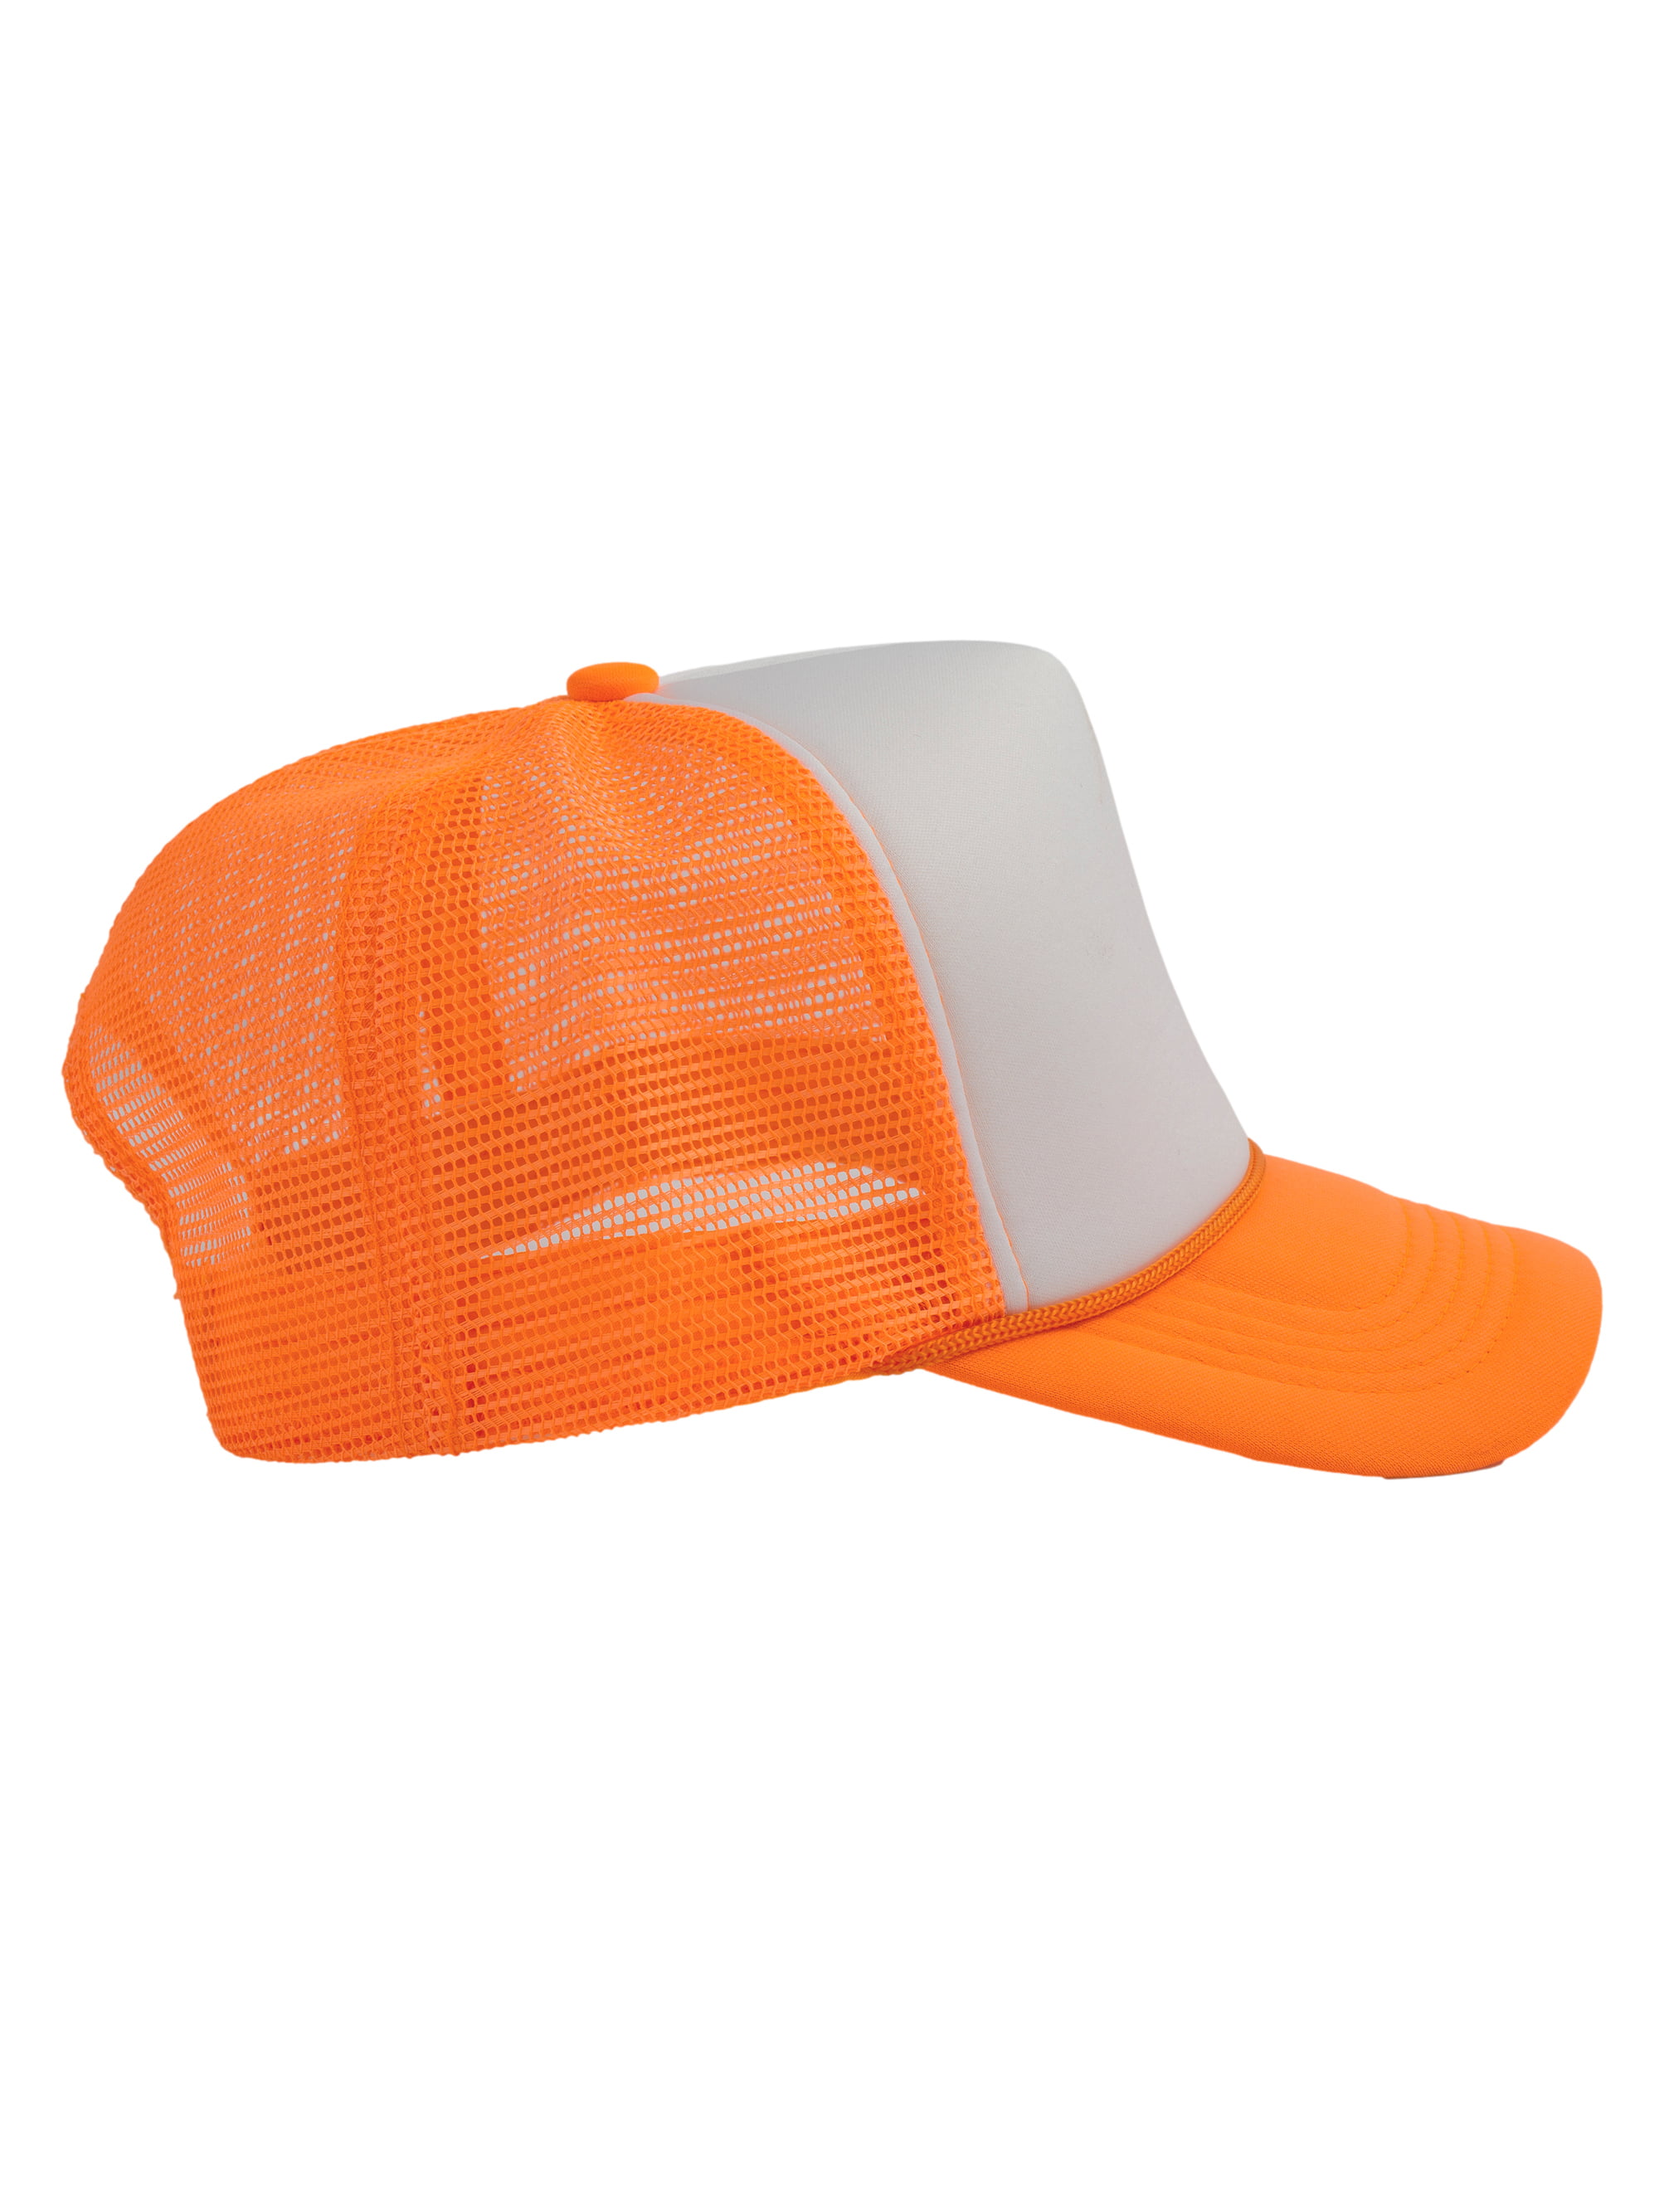 Mesh - Headwear Trucker White/Neon Hats Mens Snapback Foam Trucker Hat Orange Blank Top